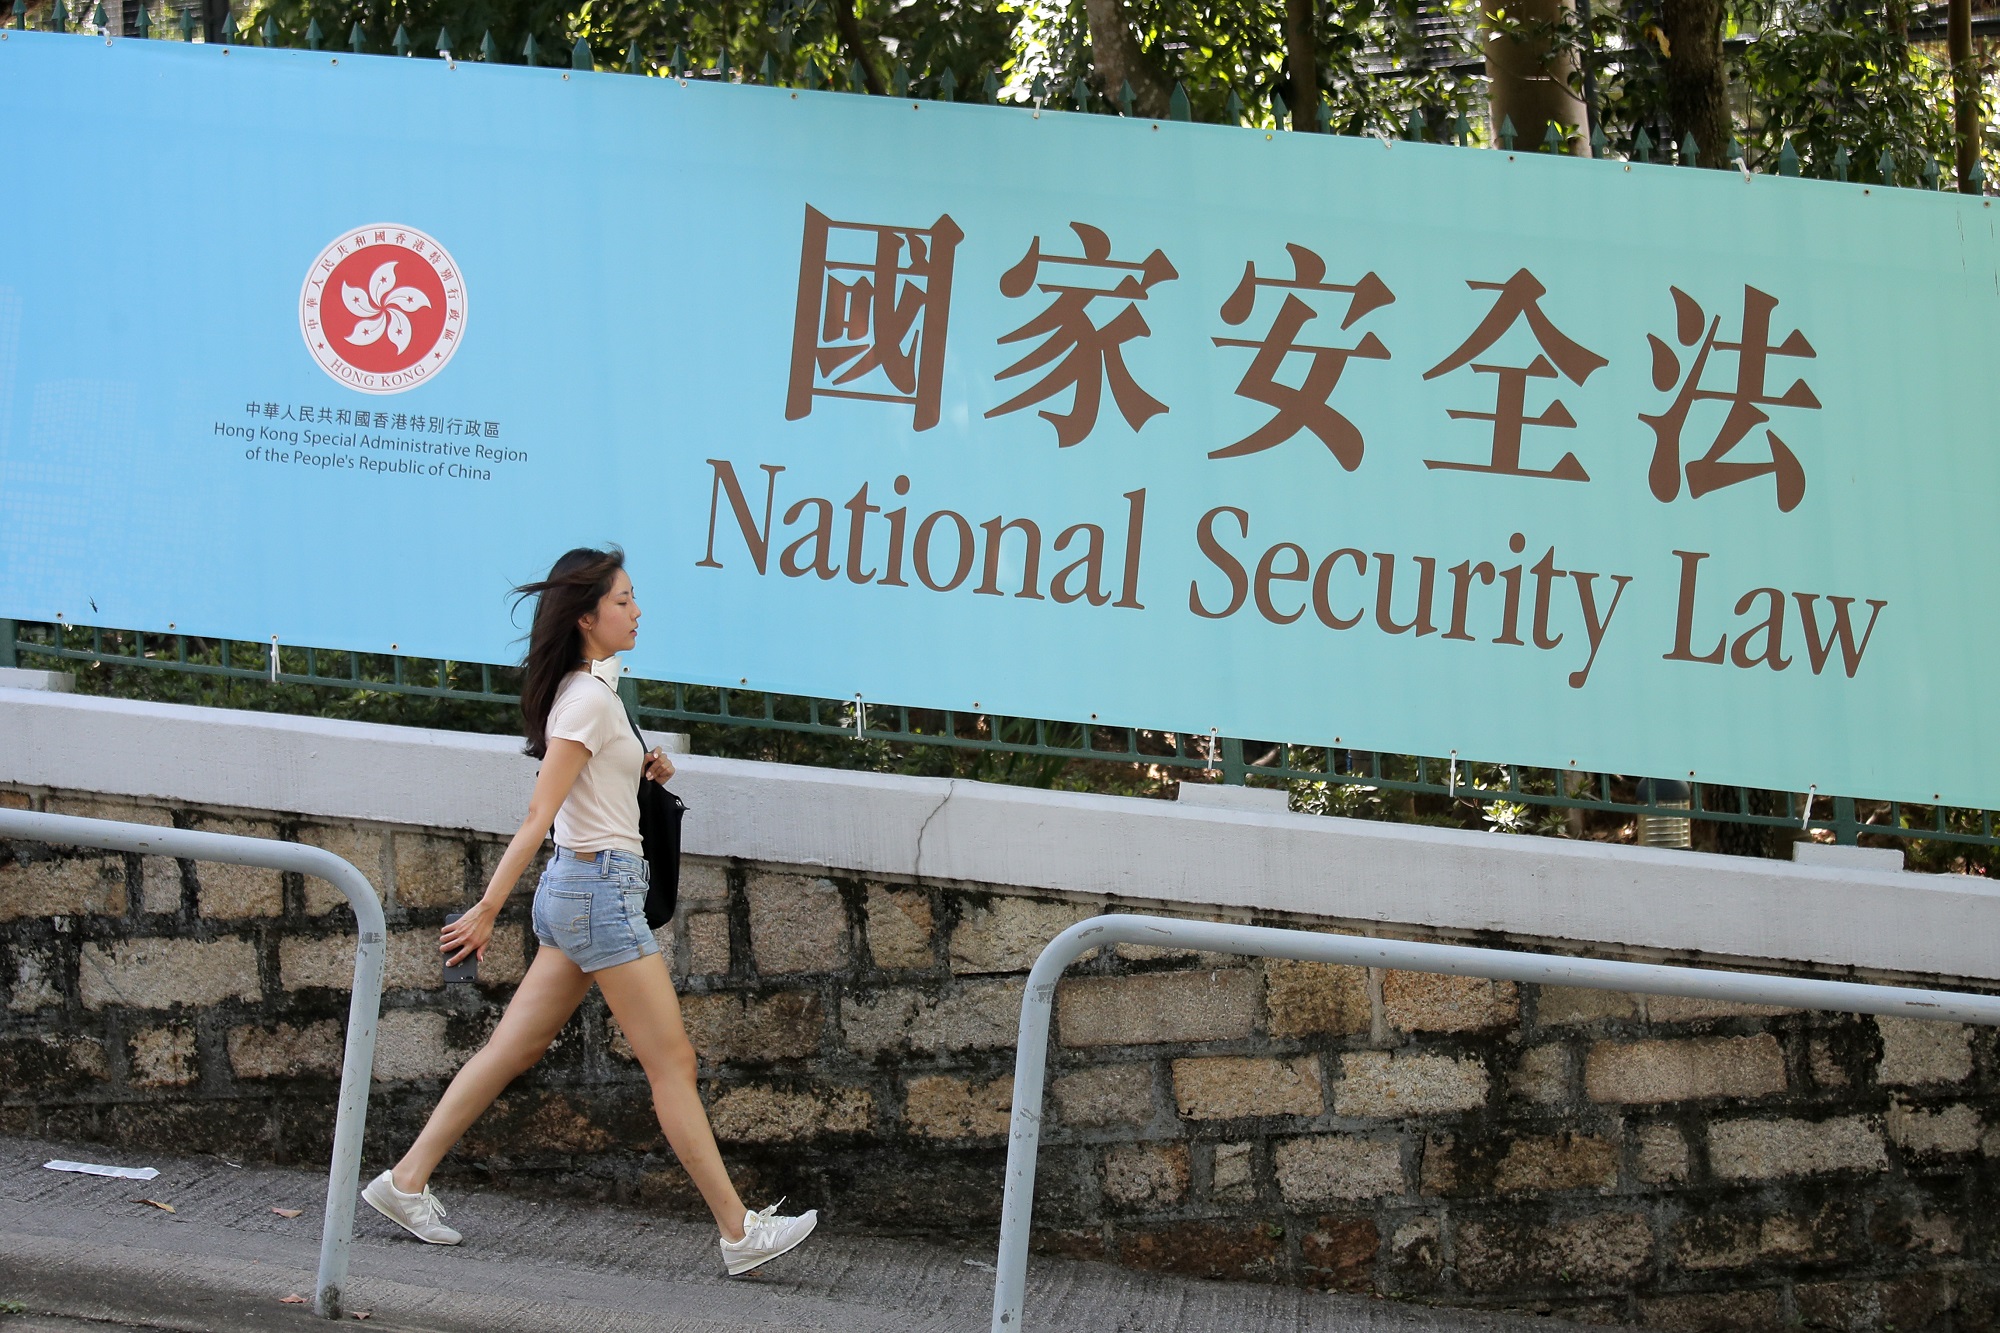 Một người đi bộ qua khu vực trưng biểu ngữ cổ động cho Luật An ninh Quốc gia ở Hong Kong, ngày 30/6/2020. Ảnh: AP.